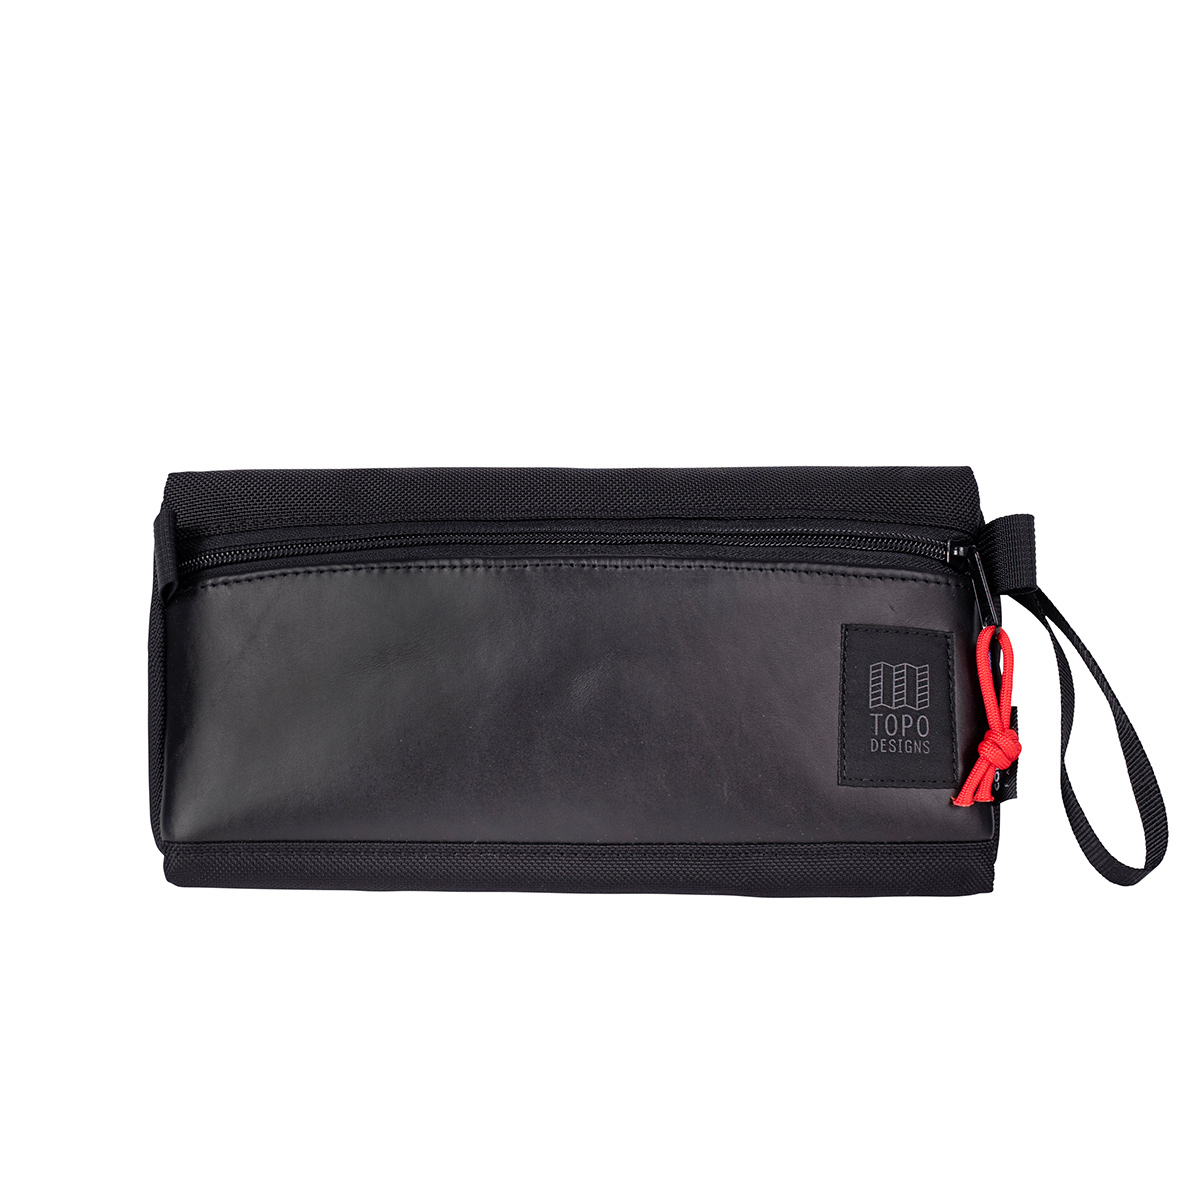 Topo Designs Dopp Kit Ballistic Black/Black Leather, waterbestendig, voor compact reizen, ook te gebruiken als accessoire opbergtas